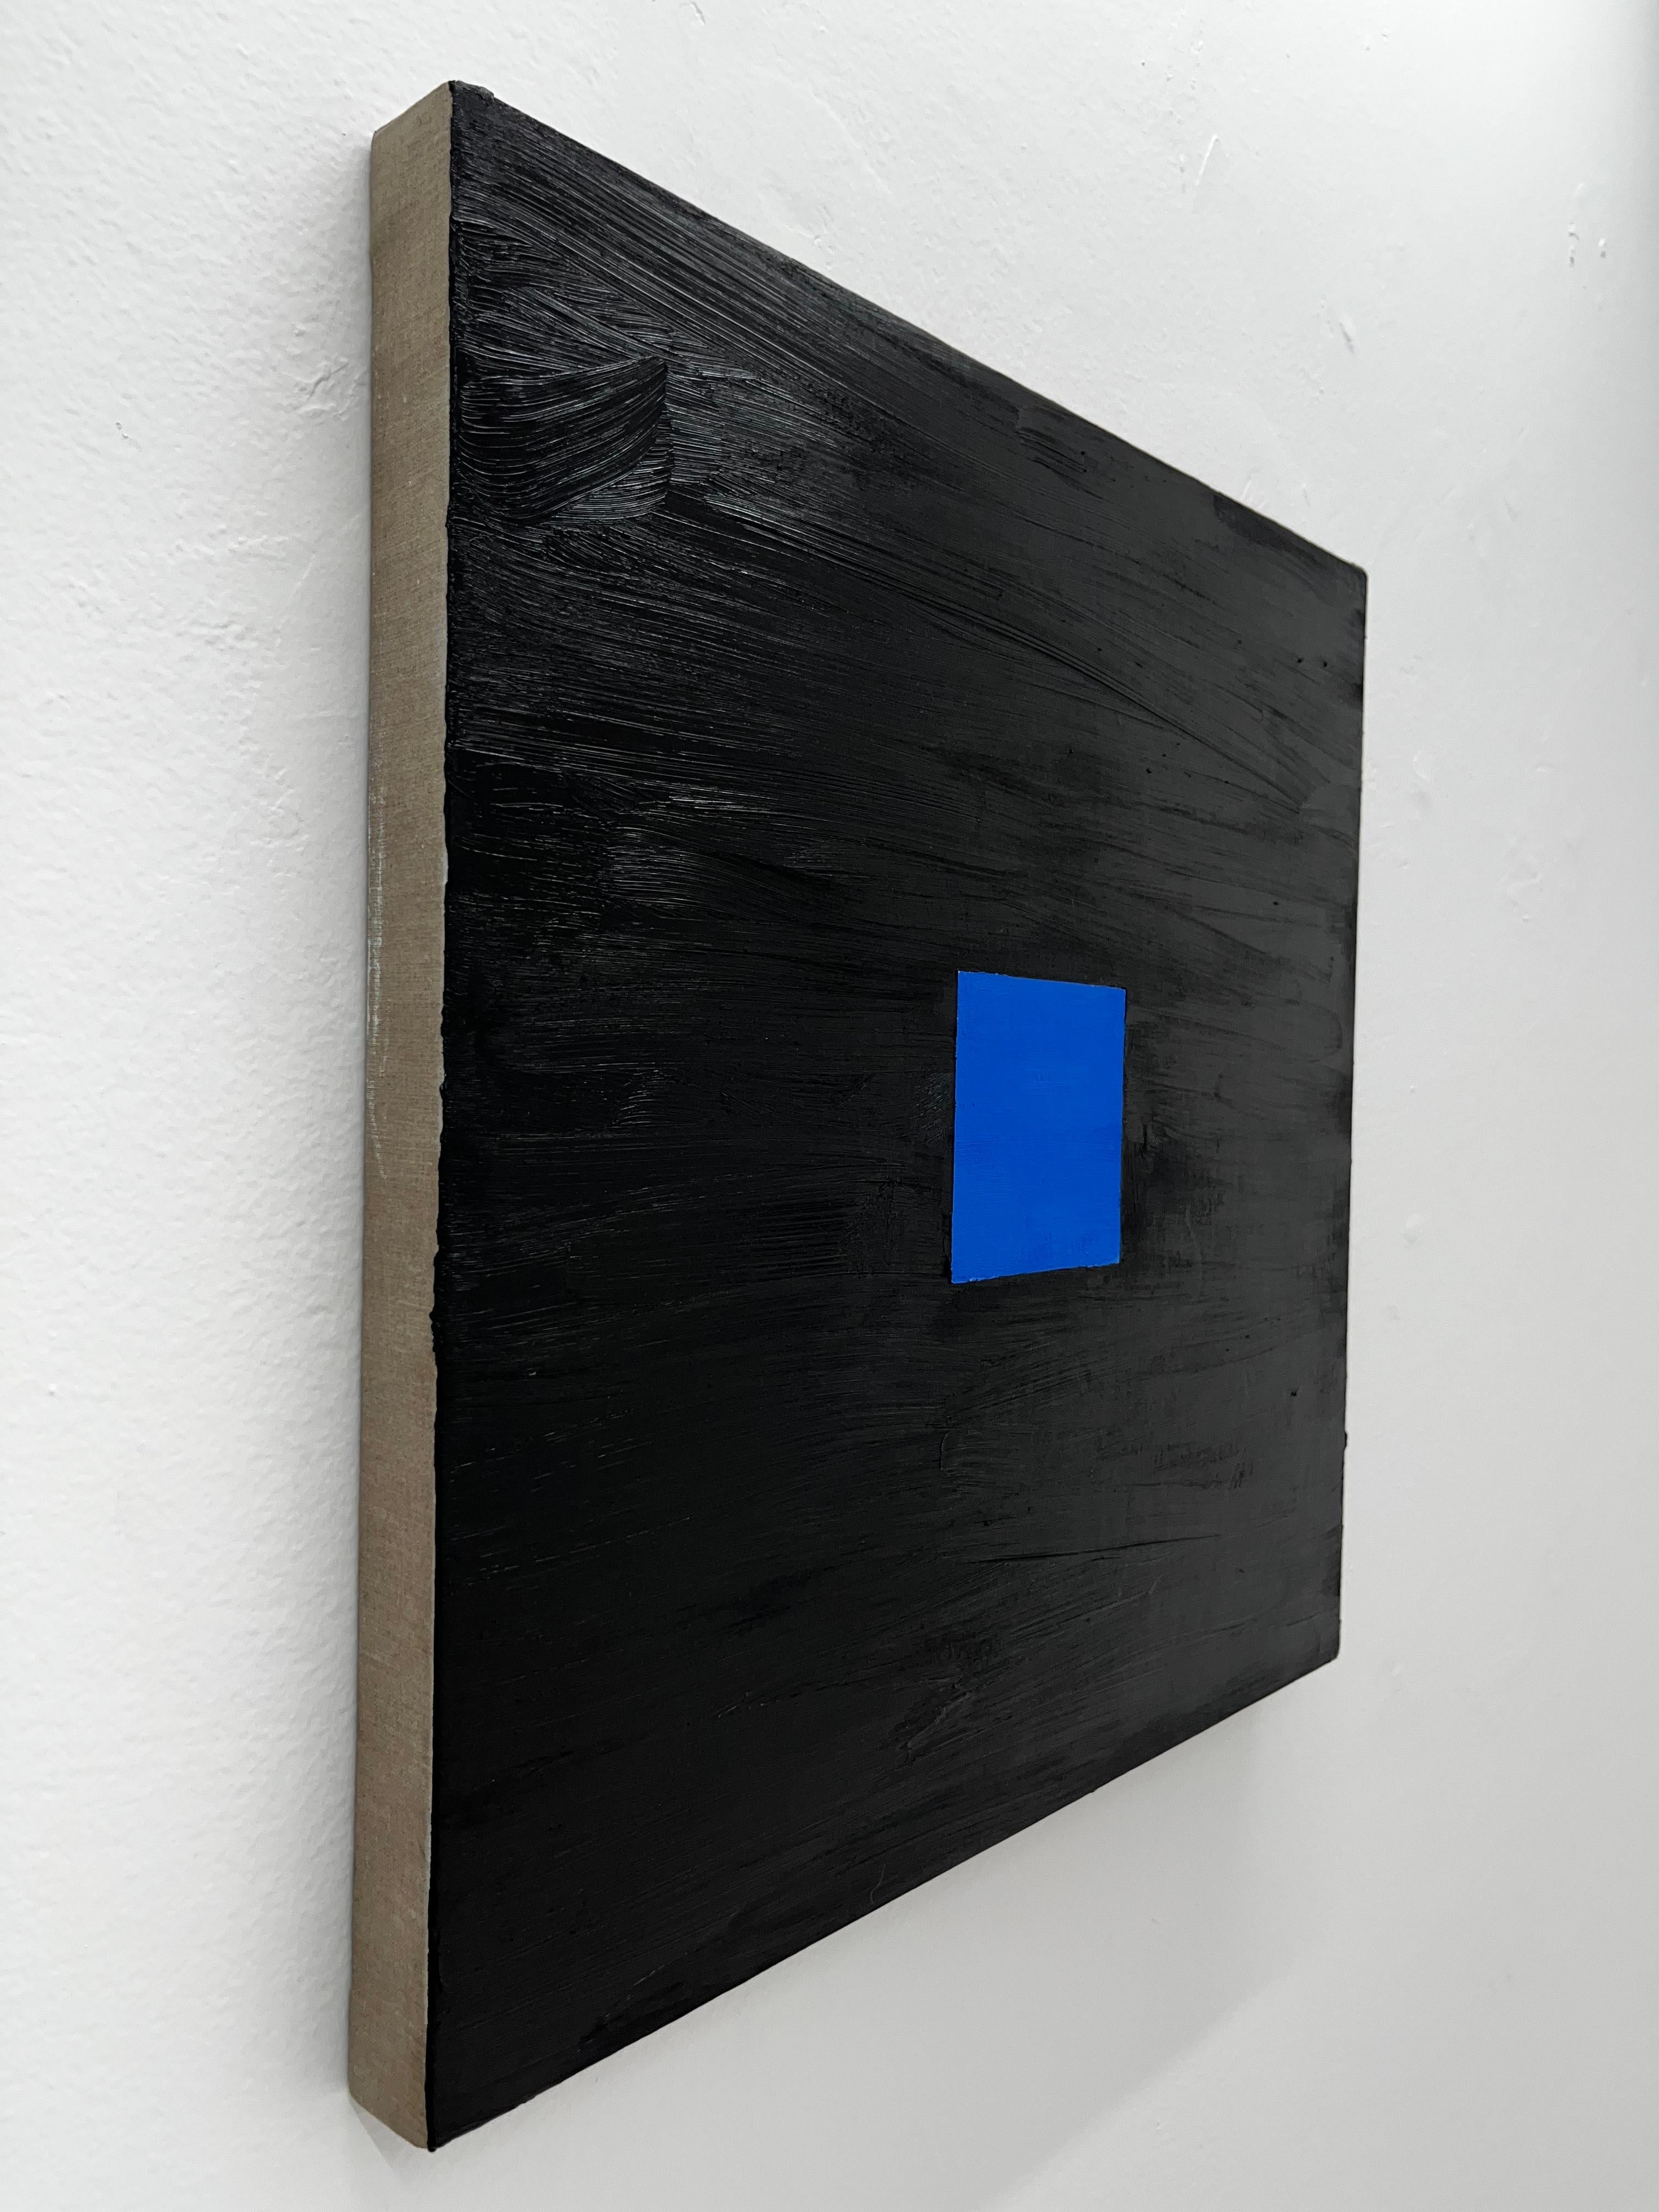 Utilisant de la peinture à l'huile pure, qui donne à l'œuvre sa texture unique, l'artiste parvient à utiliser deux couleurs particulièrement difficiles à travailler : le noir et le bleu. 

Cette œuvre fait partie de l'exposition 